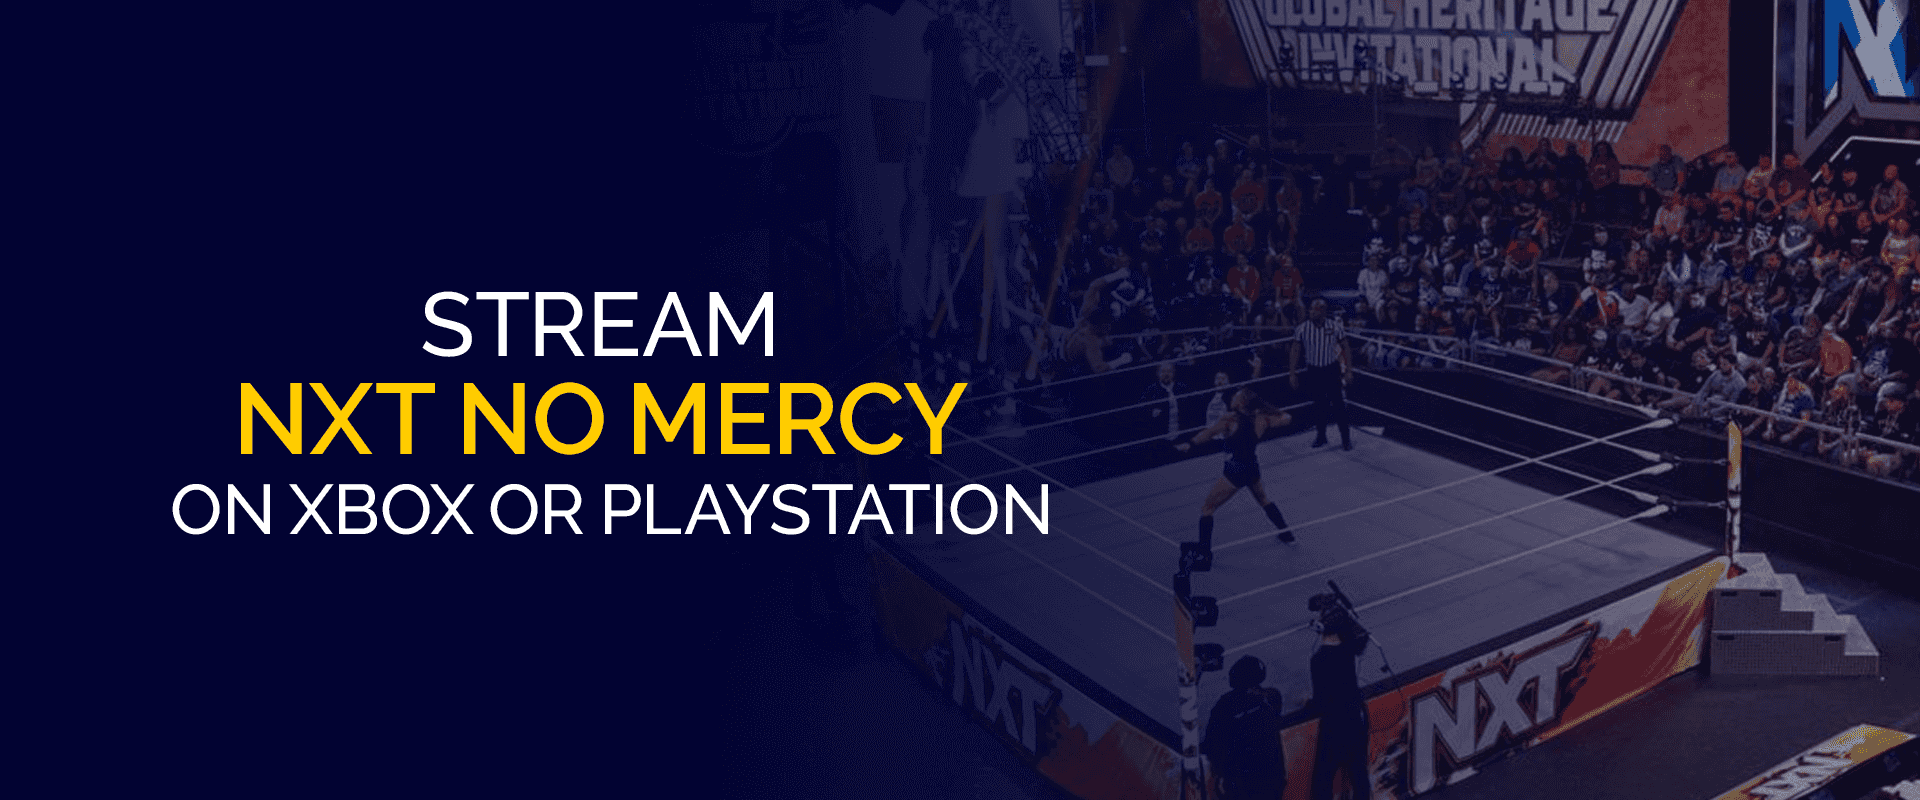 NXT No Mercy'i Xbox veya PlayStation'da Yayınlayın